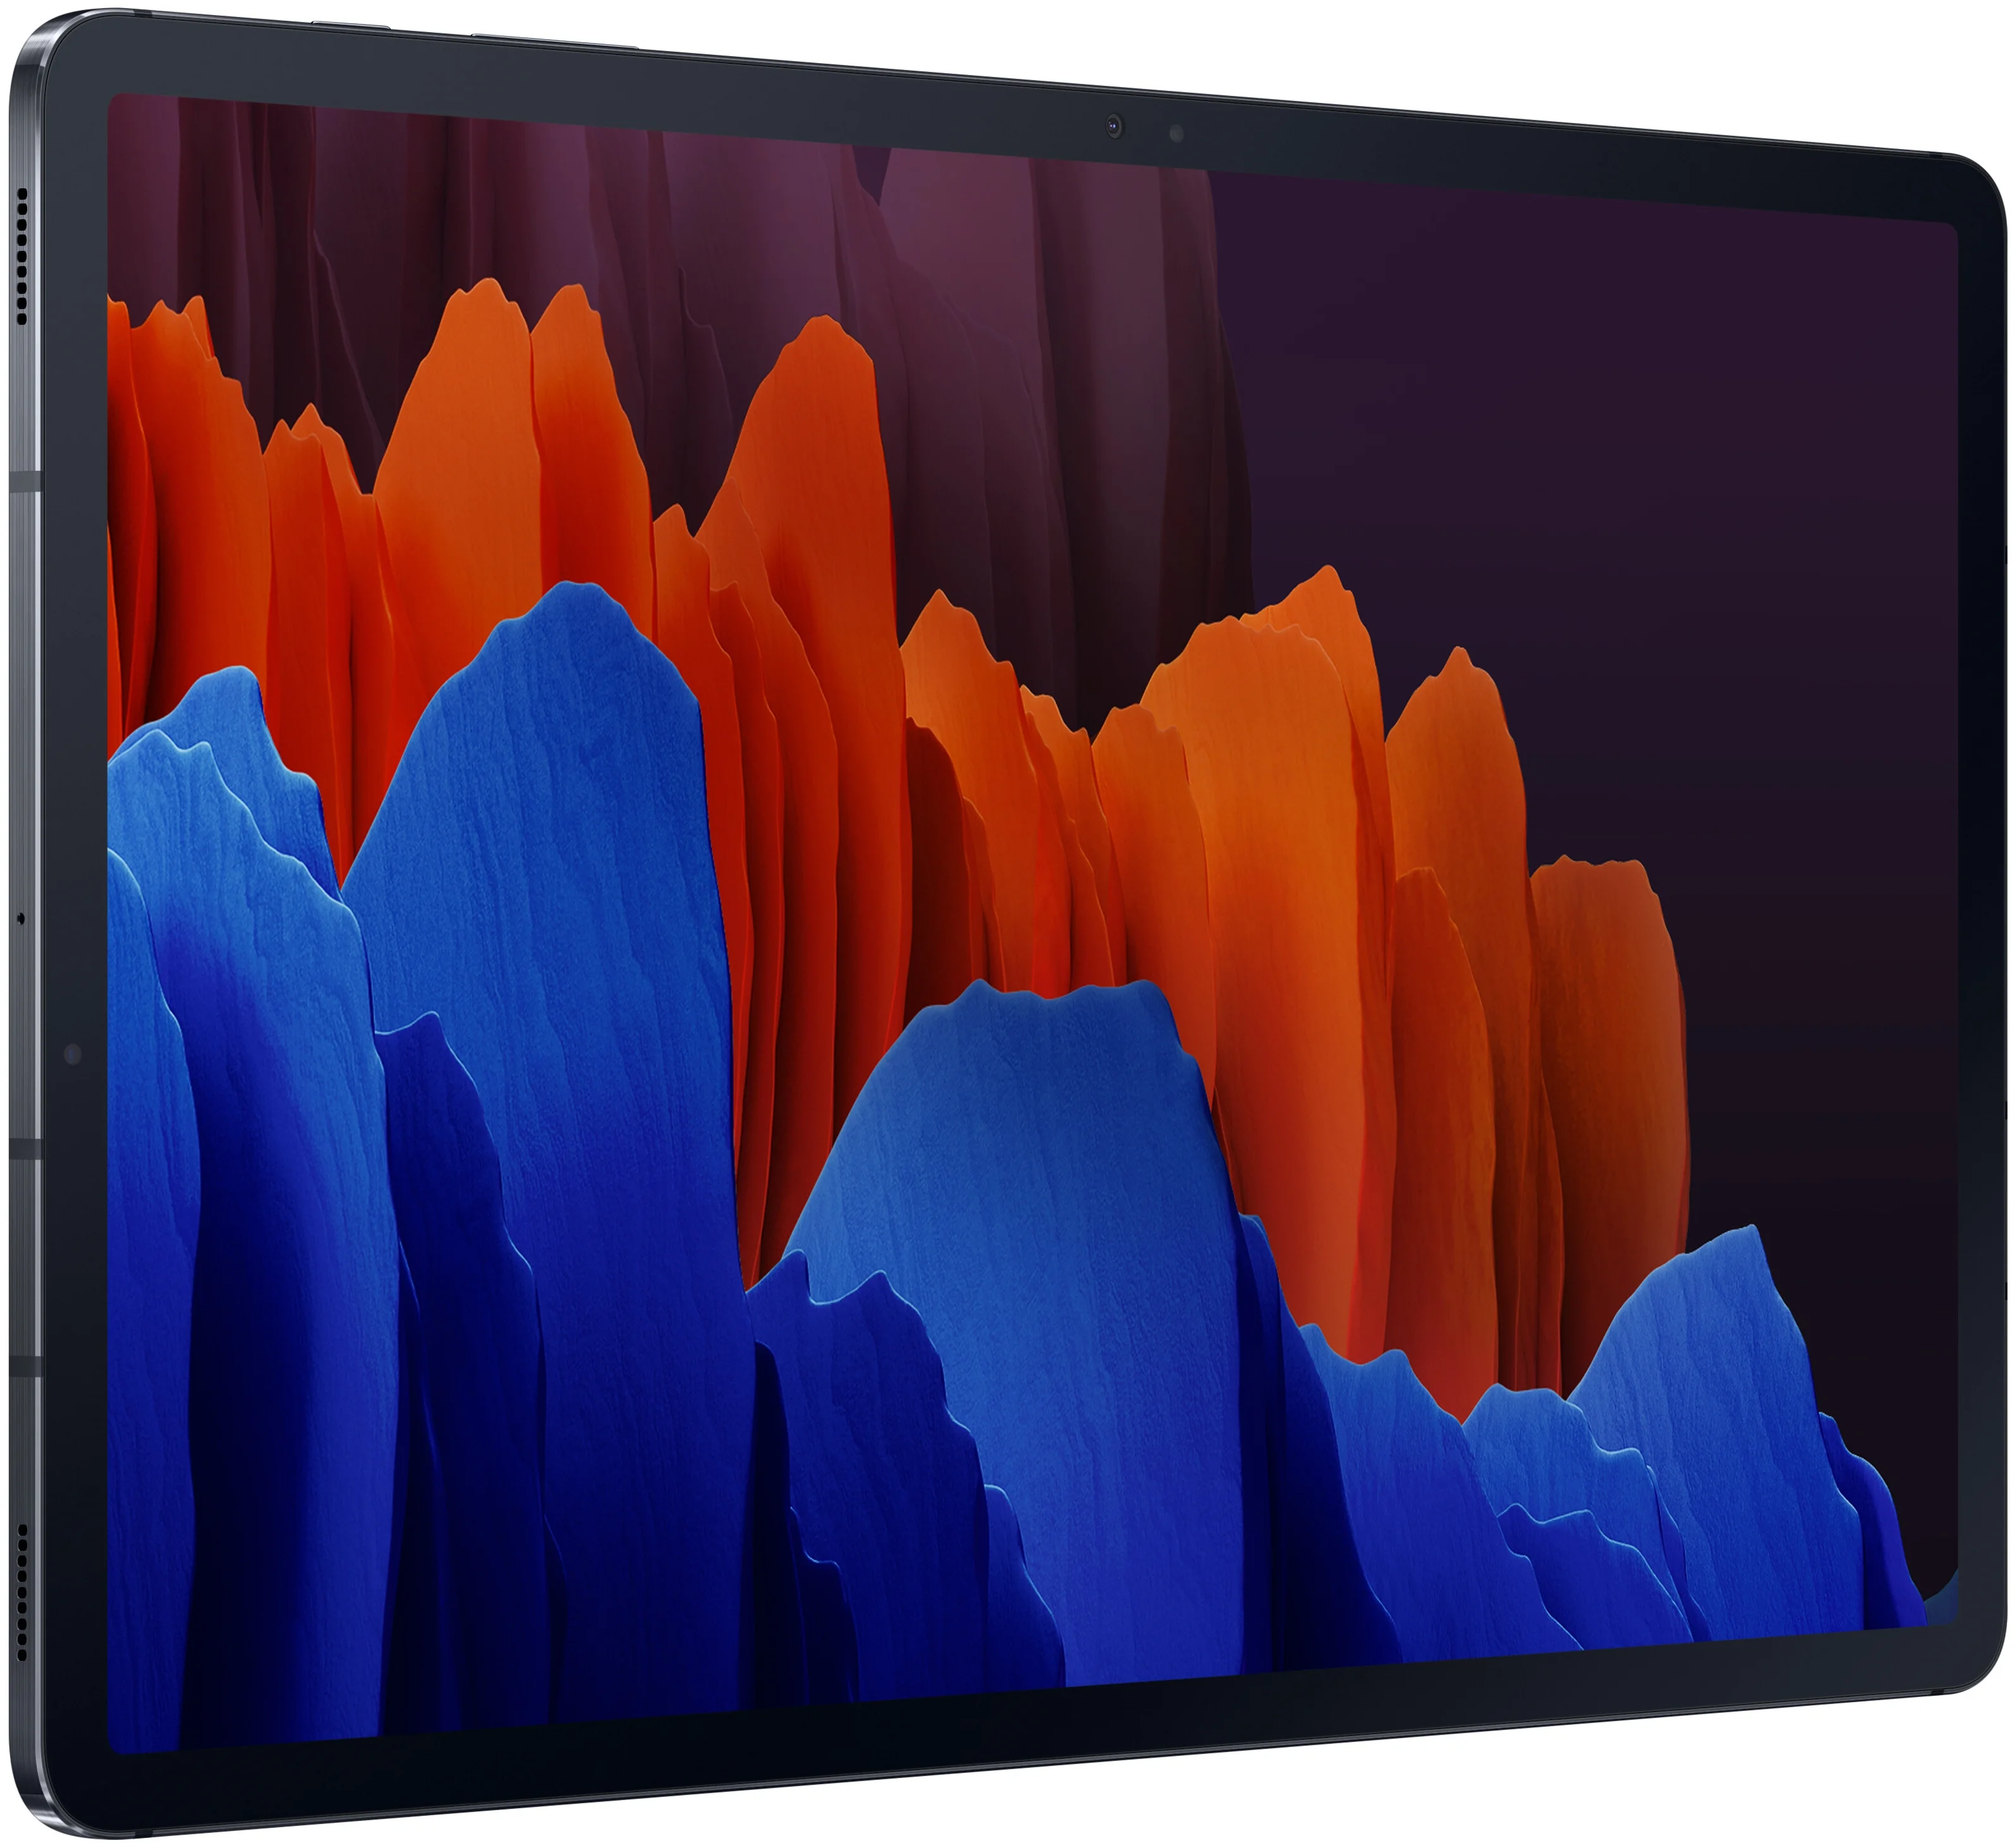 Samsung Galaxy Tab S7+ 12.4 SM-T970 128Gb Wi-Fi (2020) - встроенная память: 128 ГБ, слот microSDXC